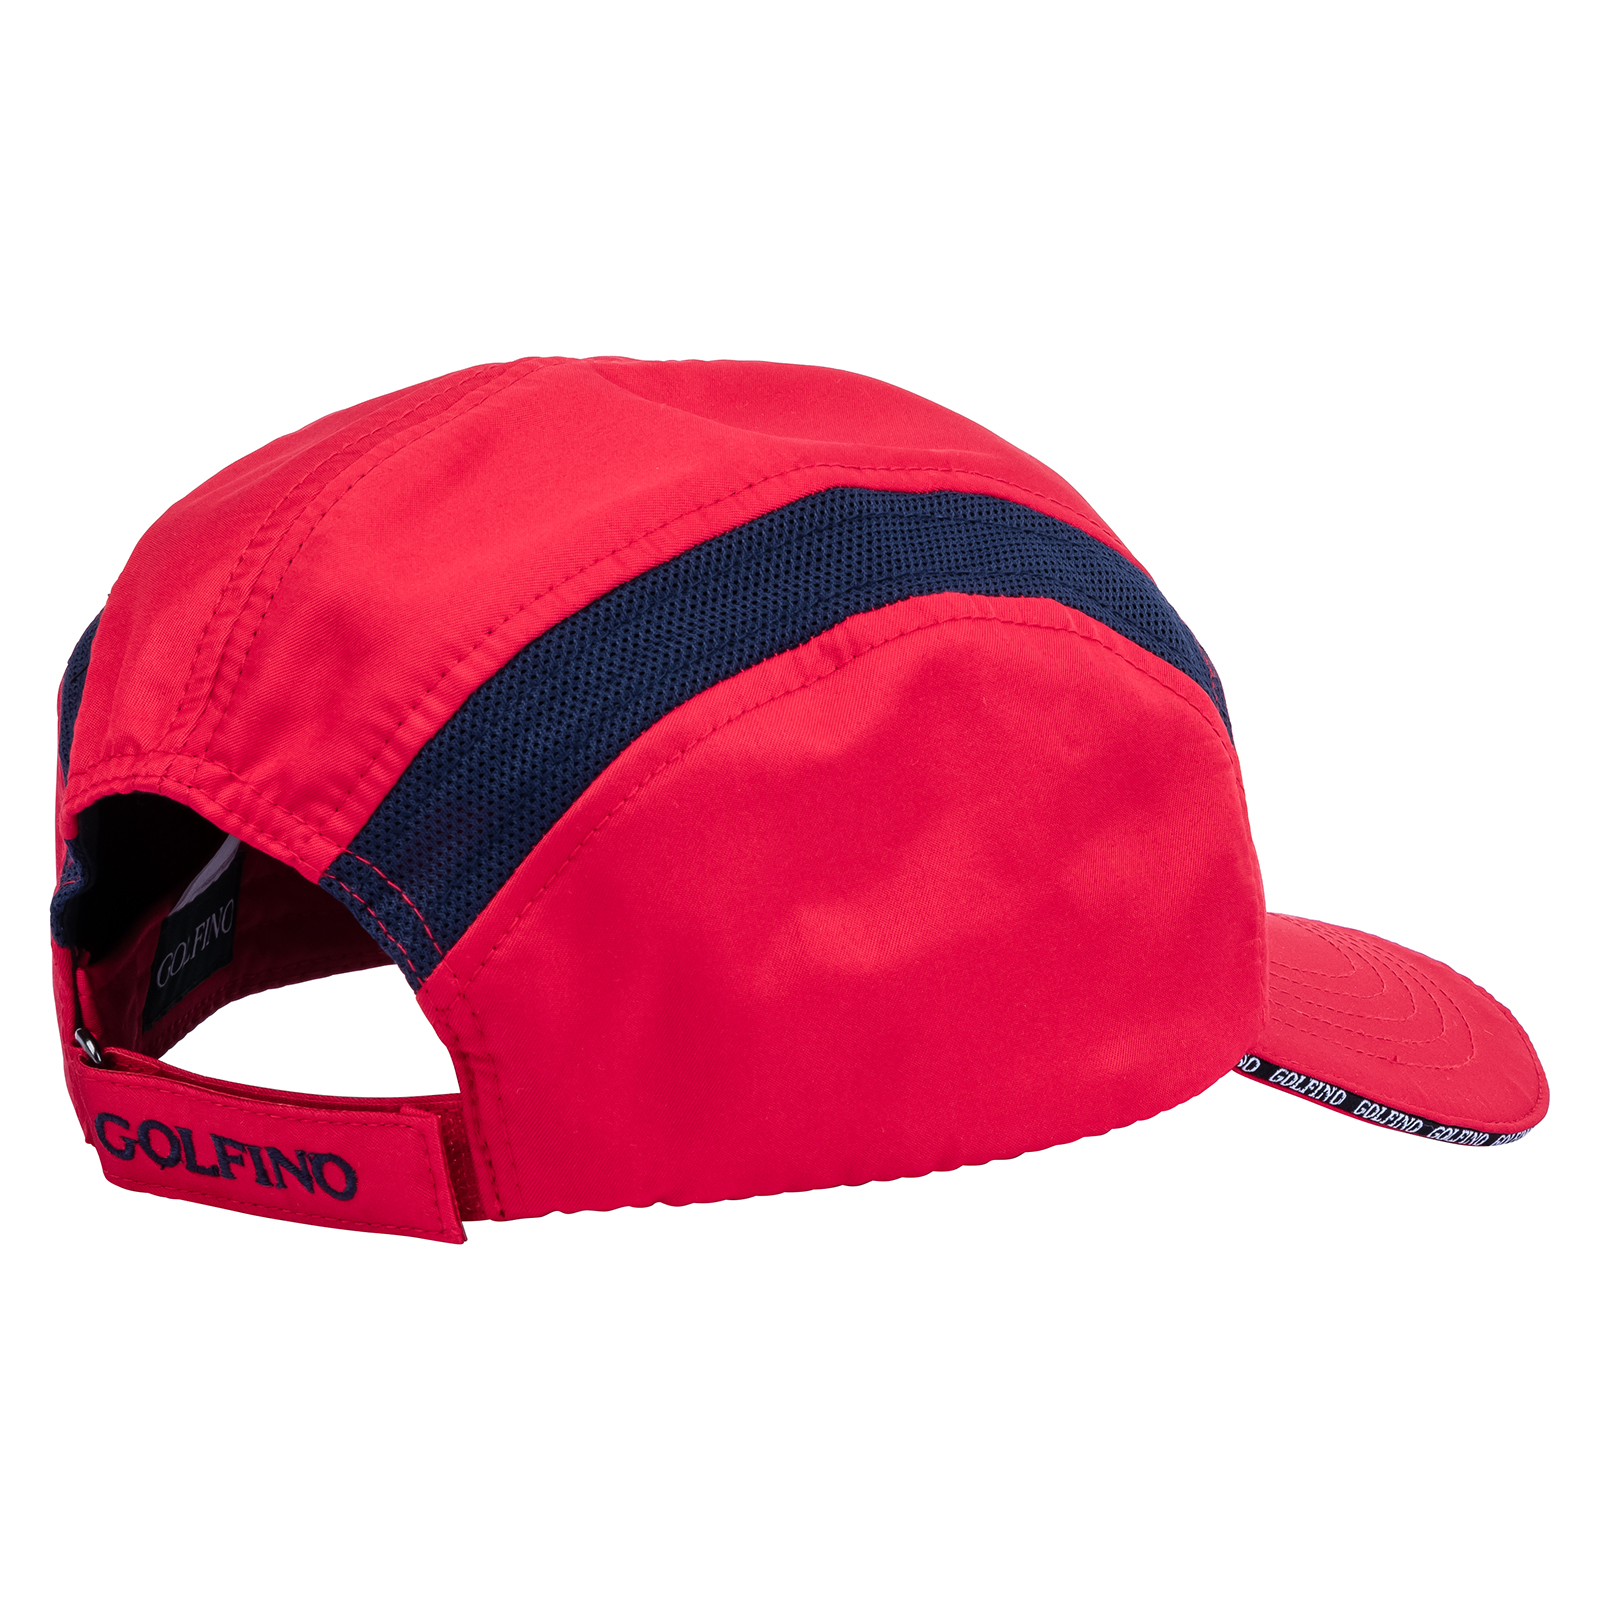 Men's lightweight golf cap with good breathing properties